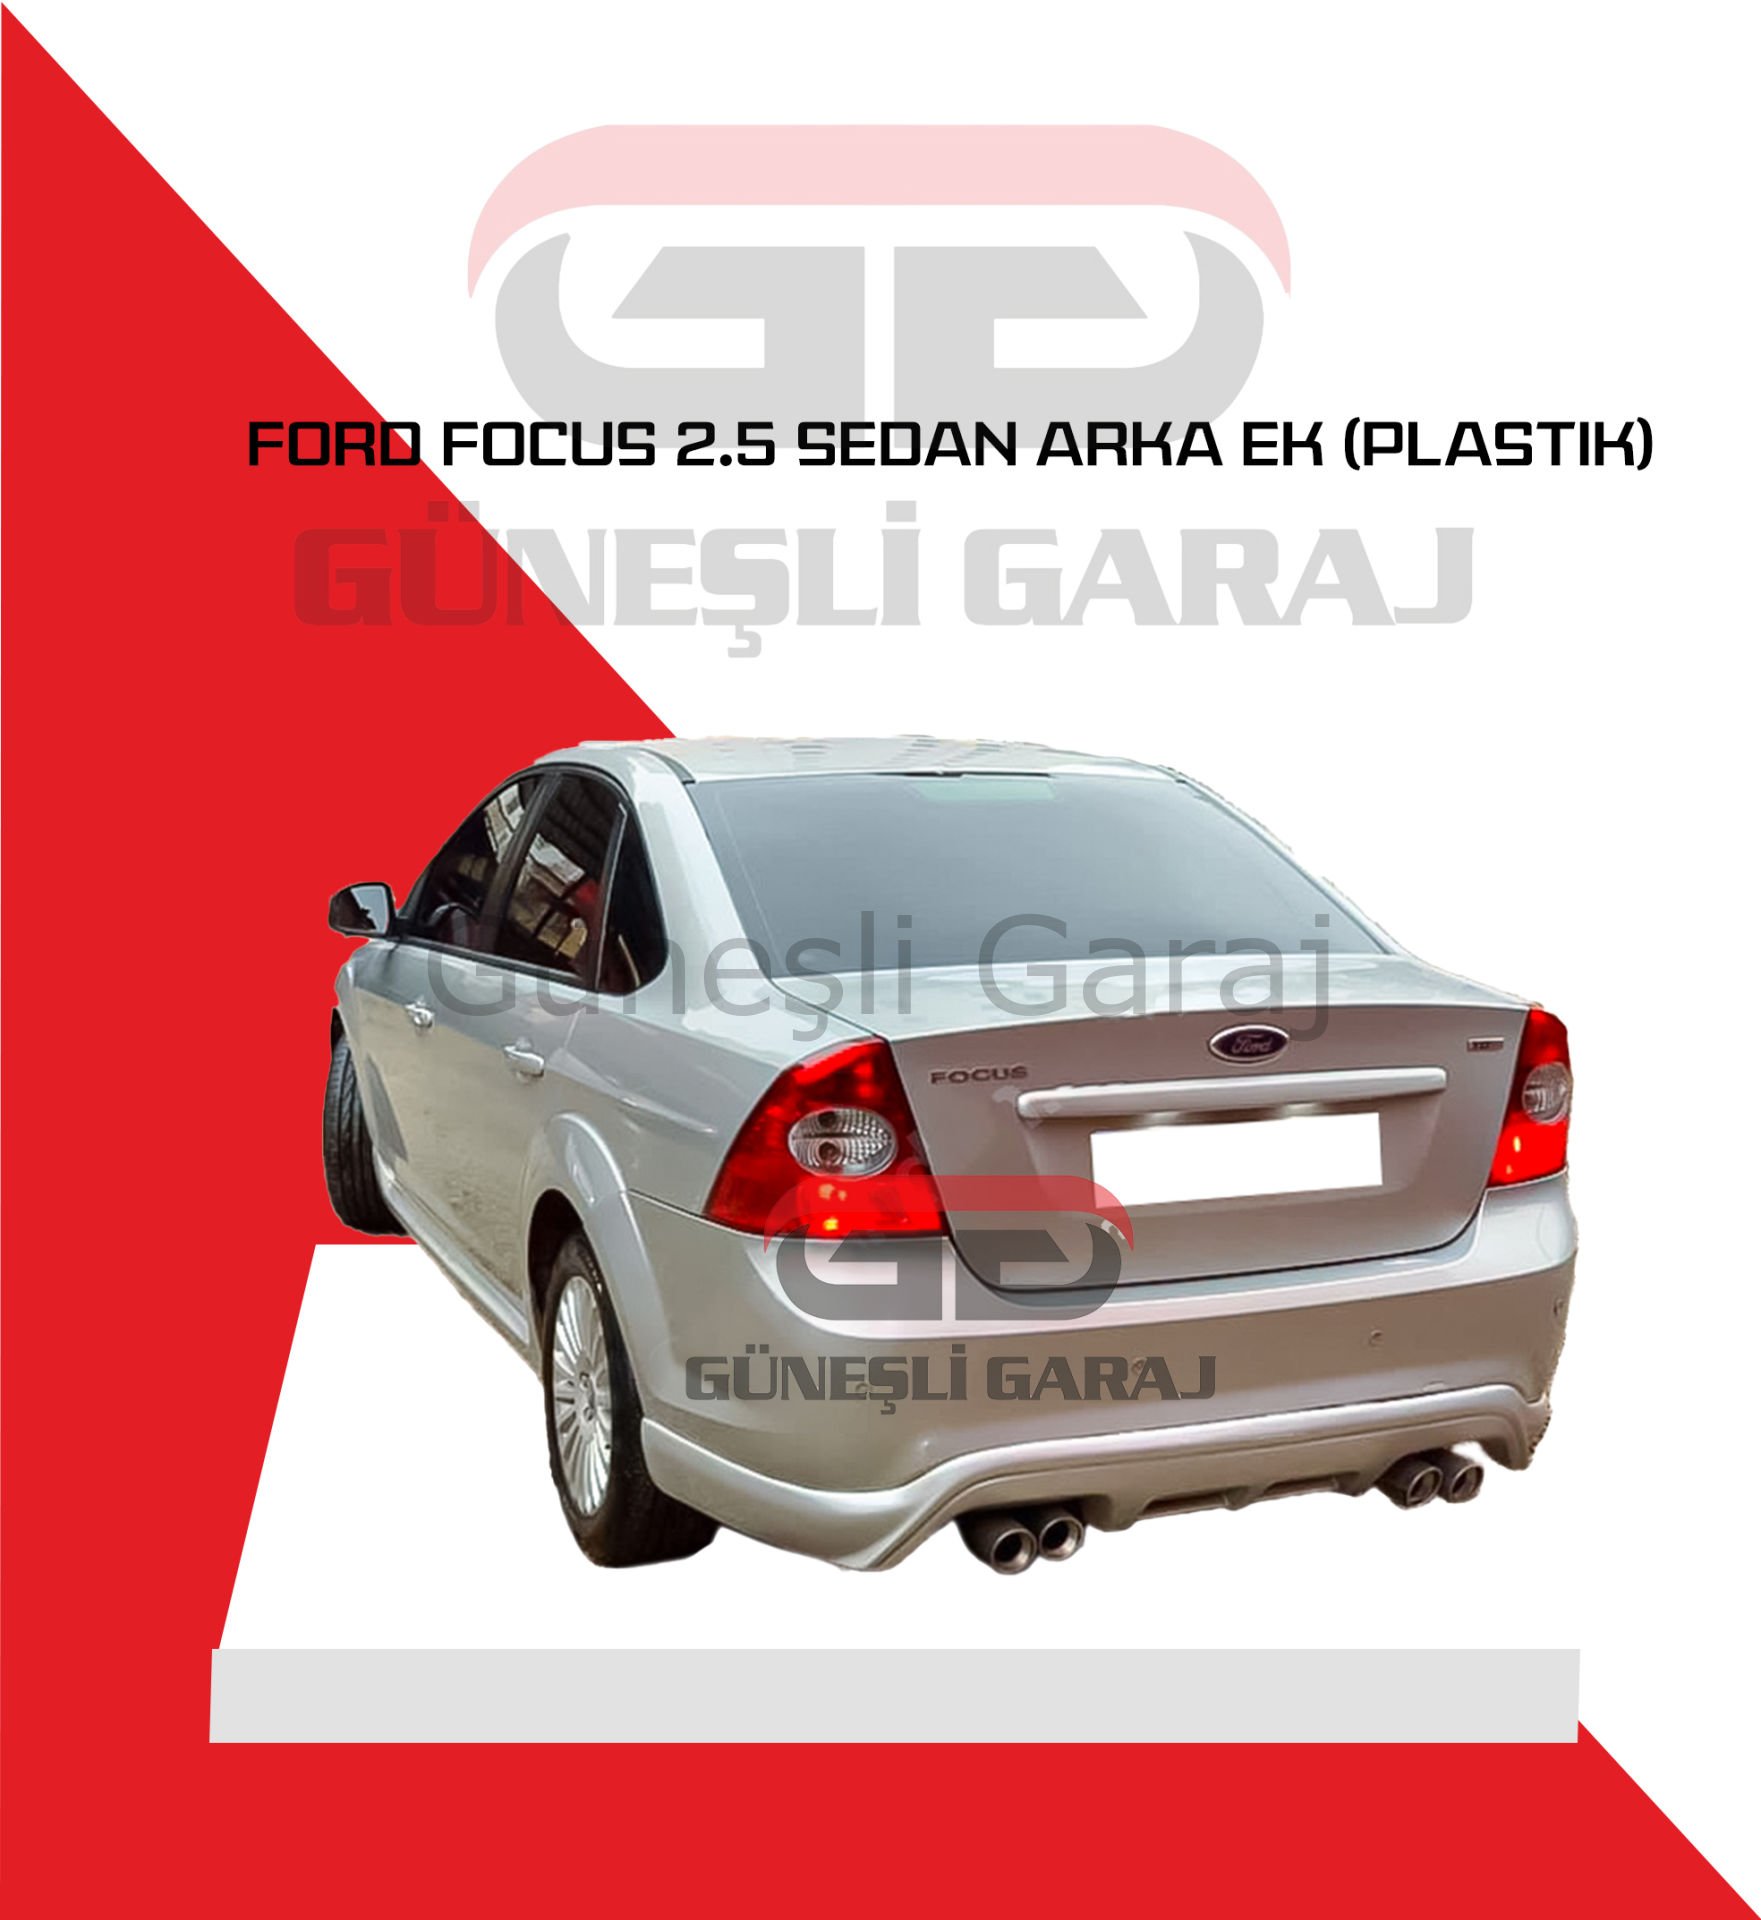 Ford Focus 2.5 Sedan Arka Ek (Plastik)